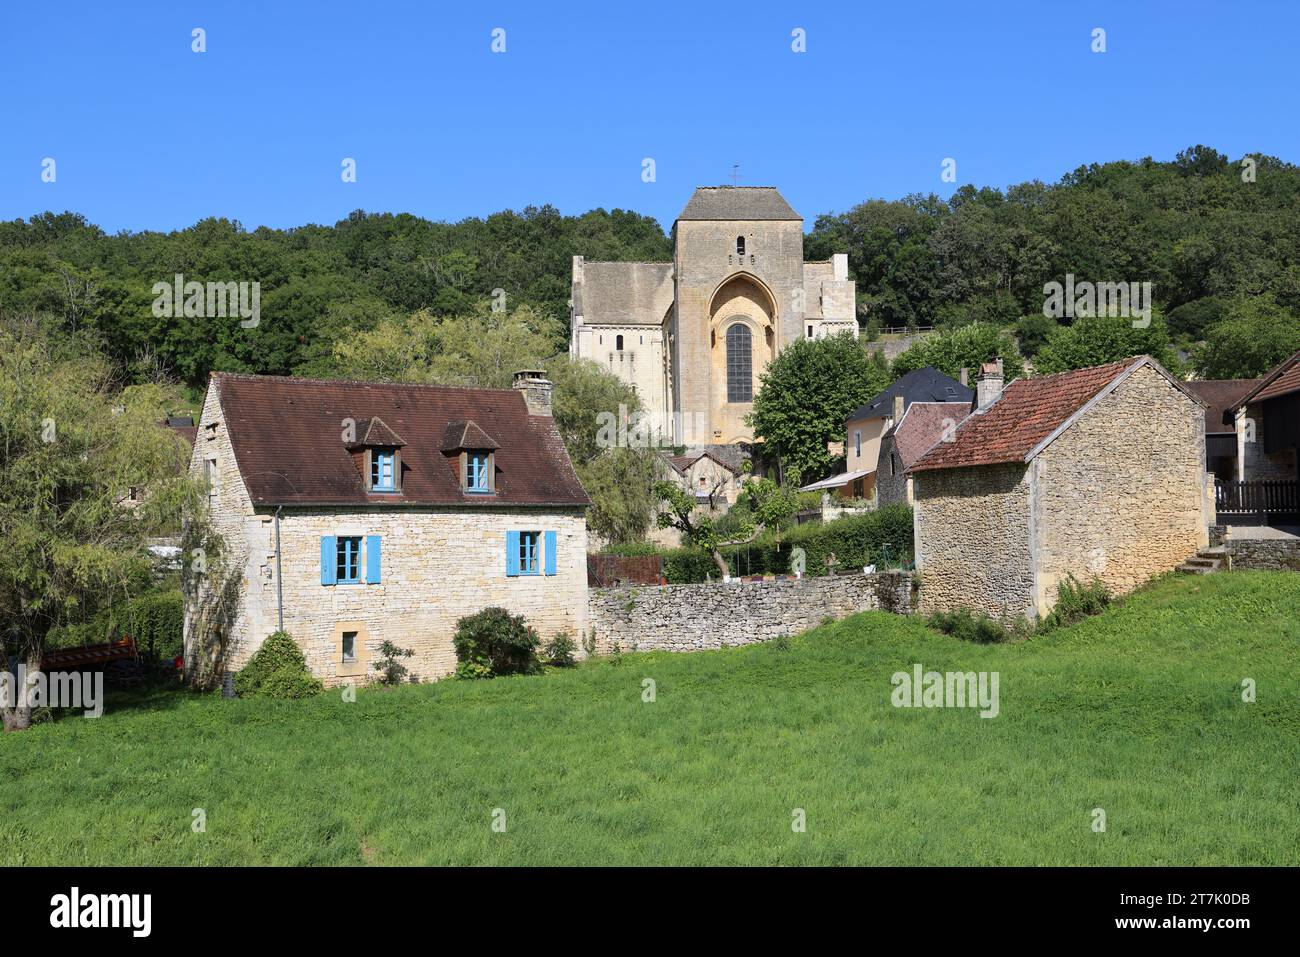 Saint-Amand-de-Coly (Coly-Saint-Amand) nel Périgord Noir è classificato tra i villaggi più belli della Francia. Storia, abbazia, chiesa fortificata, a Foto Stock